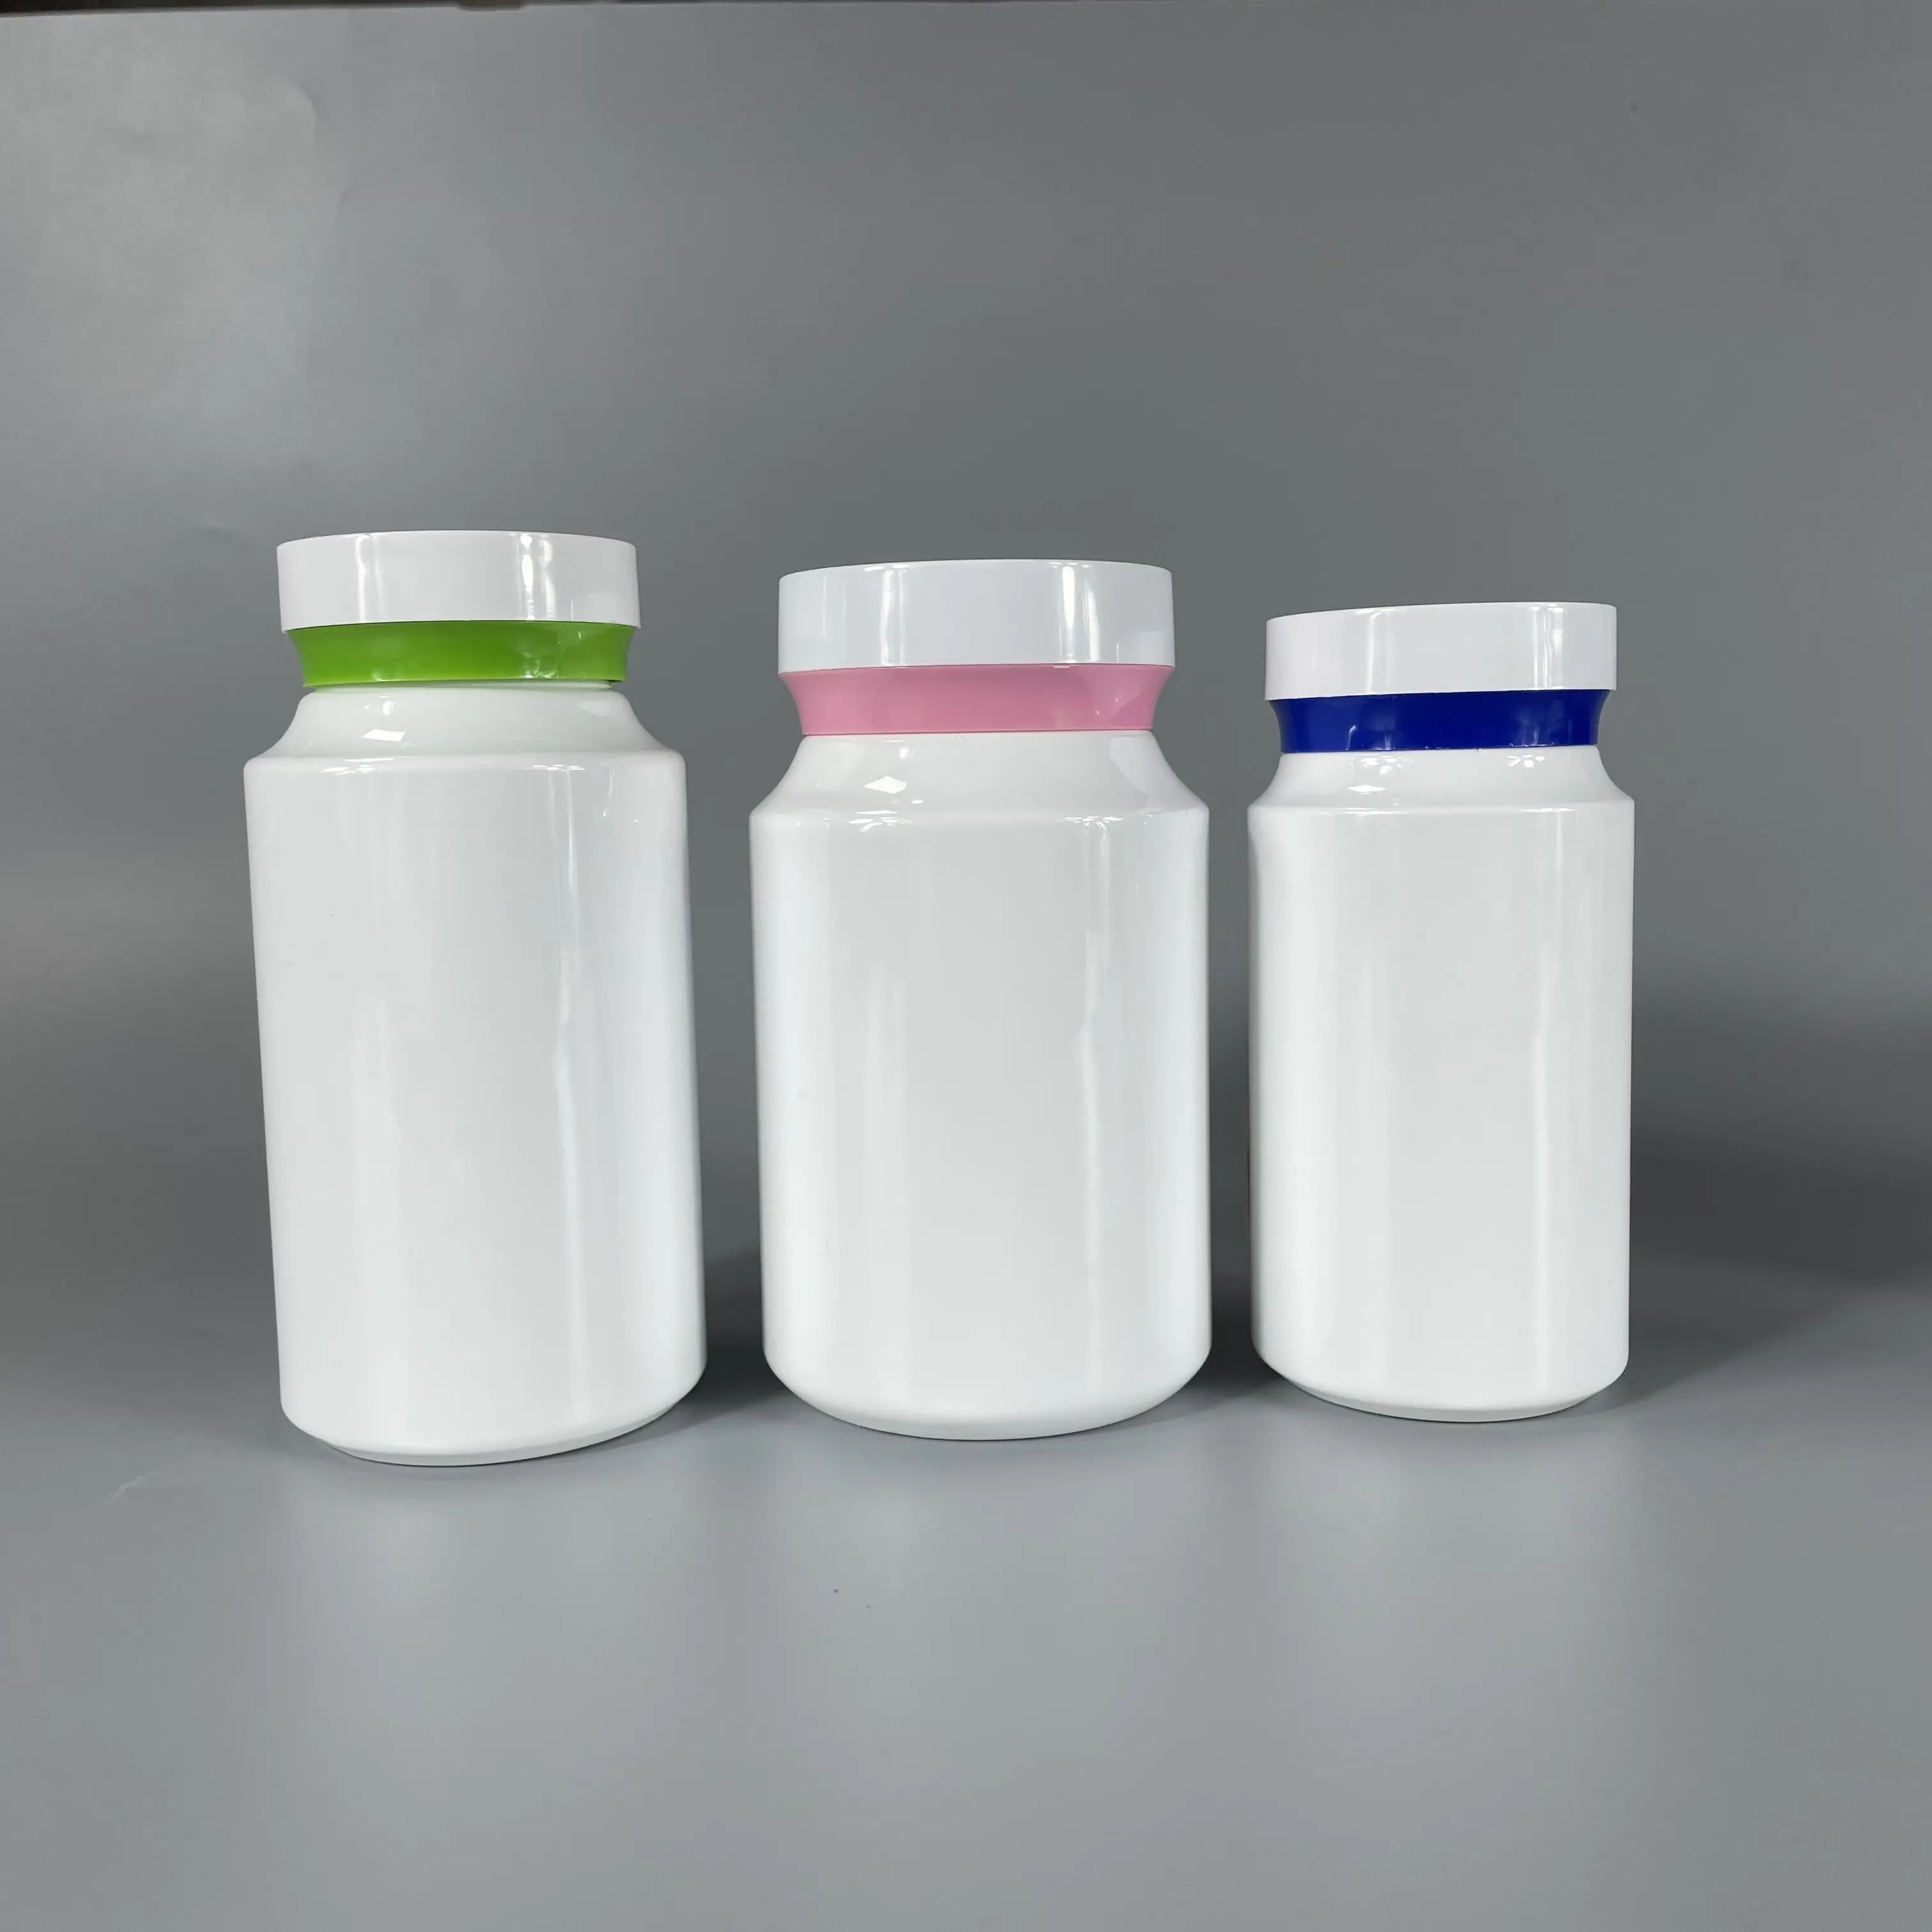 Miglior prezzo competitivo colorato per animali domestici bottiglie di plastica per animali domestici produttore di bottiglie di plastica per medicinali in Cina